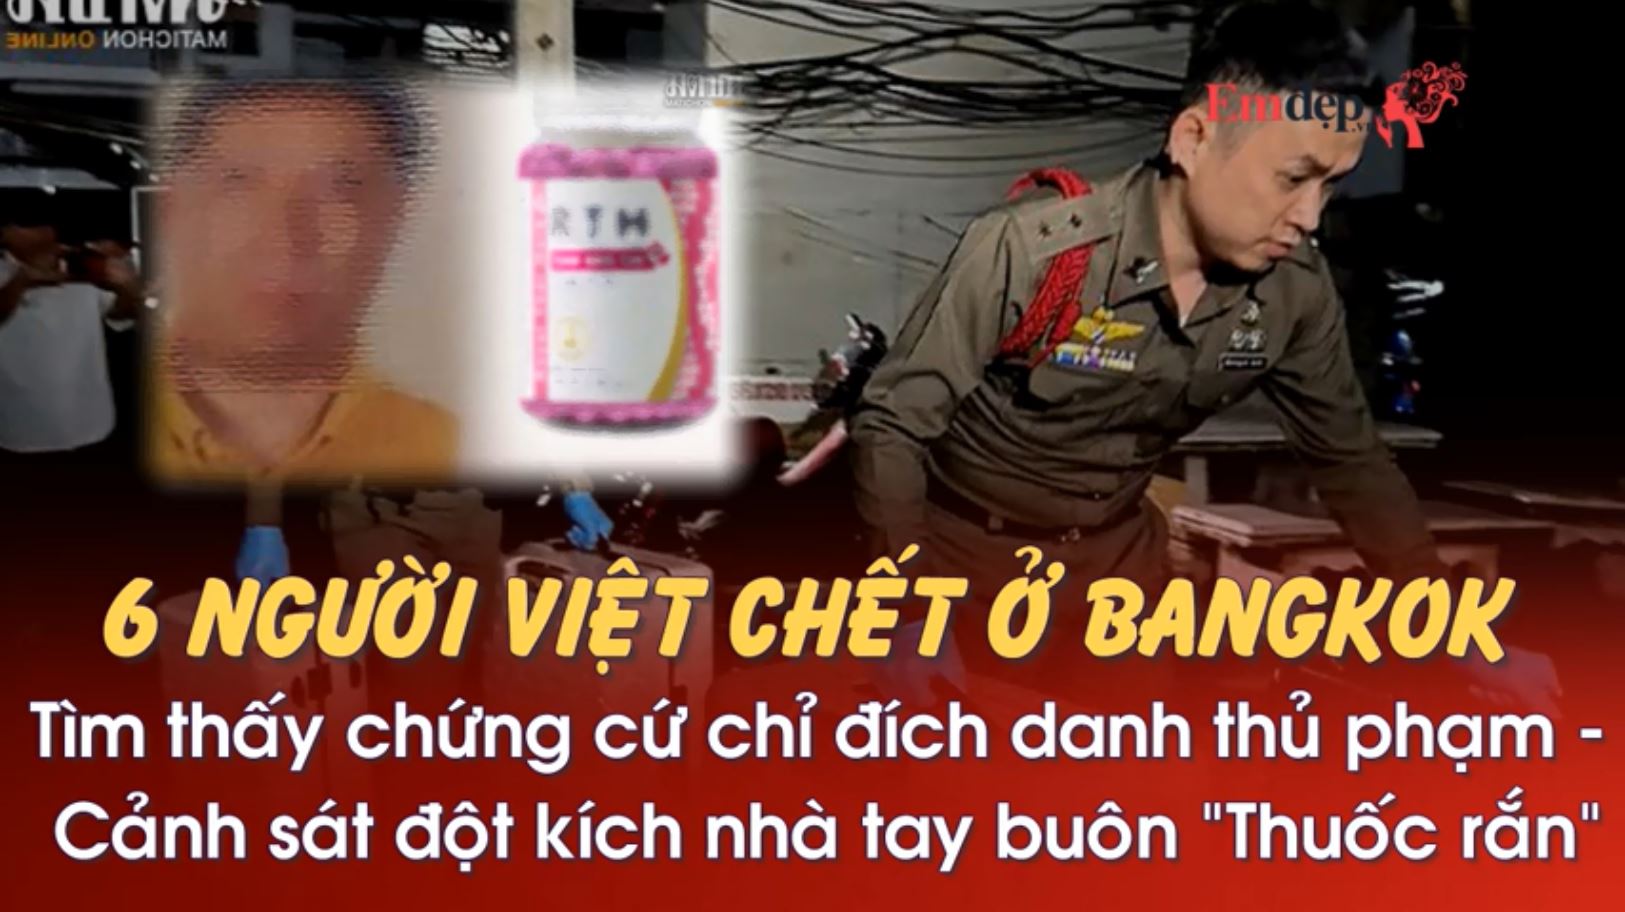 Vụ 6 người Việt chết ở Bangkok: Tìm thấy bằng chứng chỉ đích danh thủ phạm